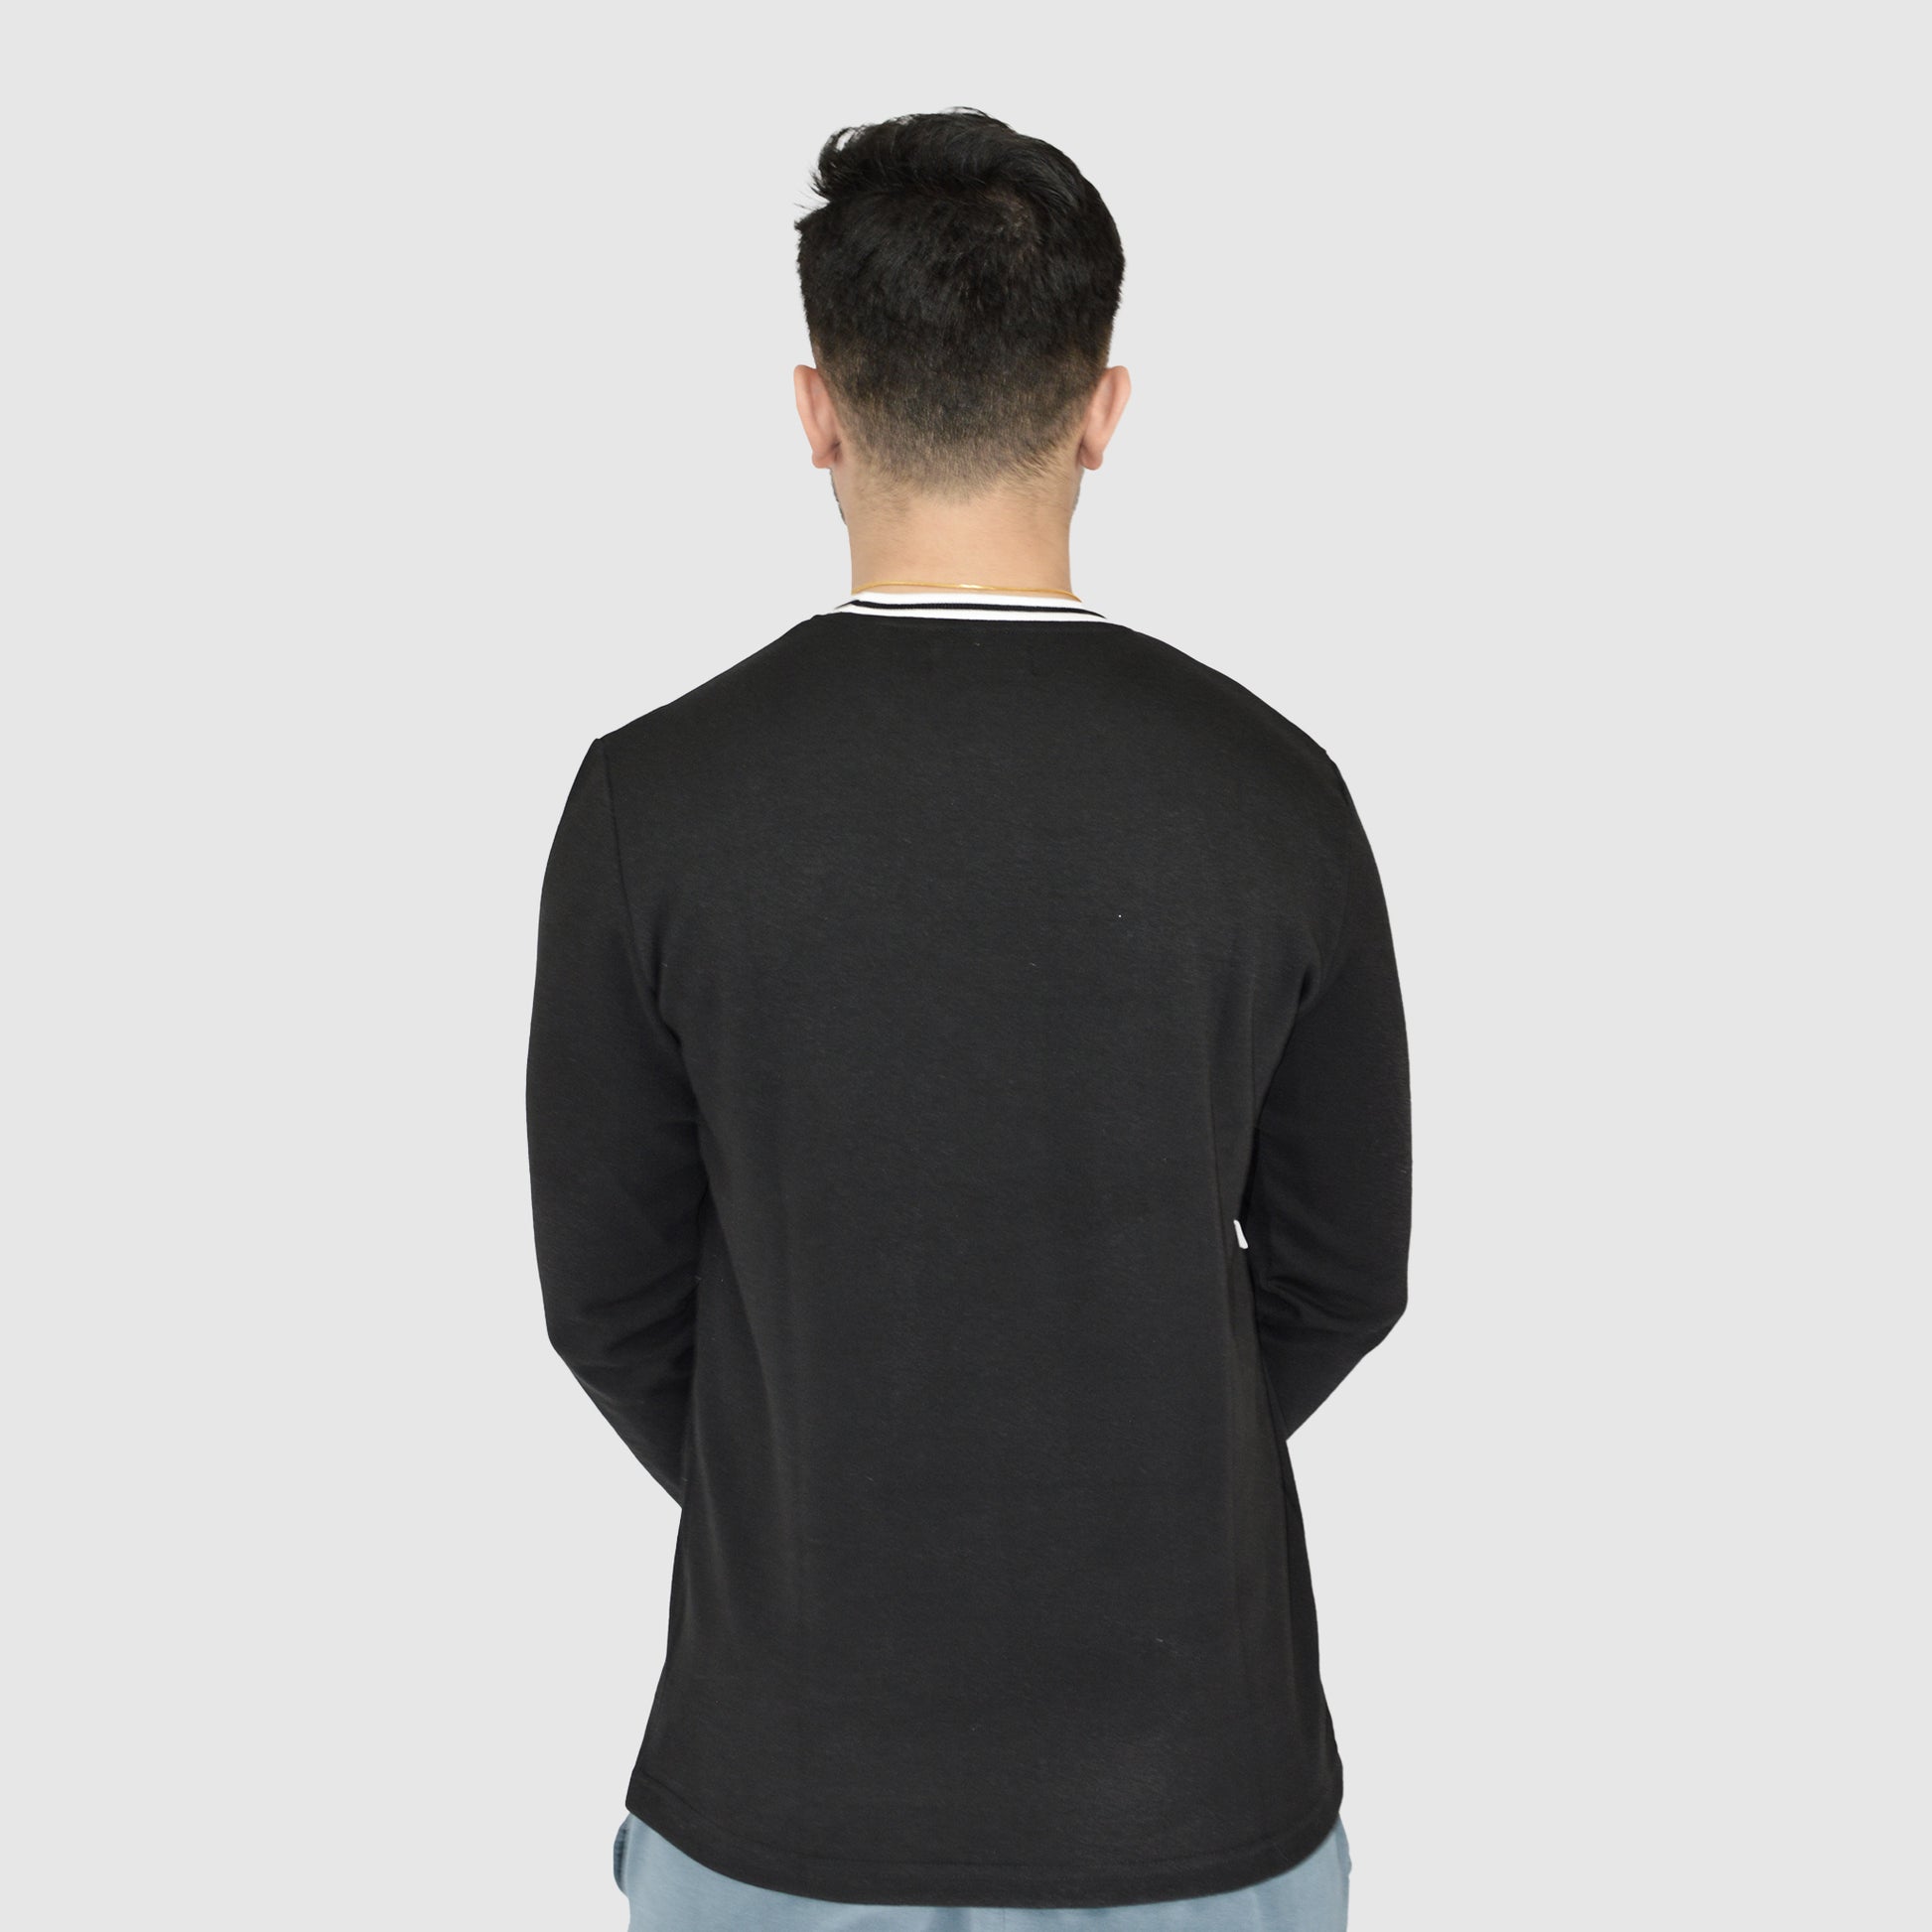 Black Full sleeve  T-Shirt for Men's